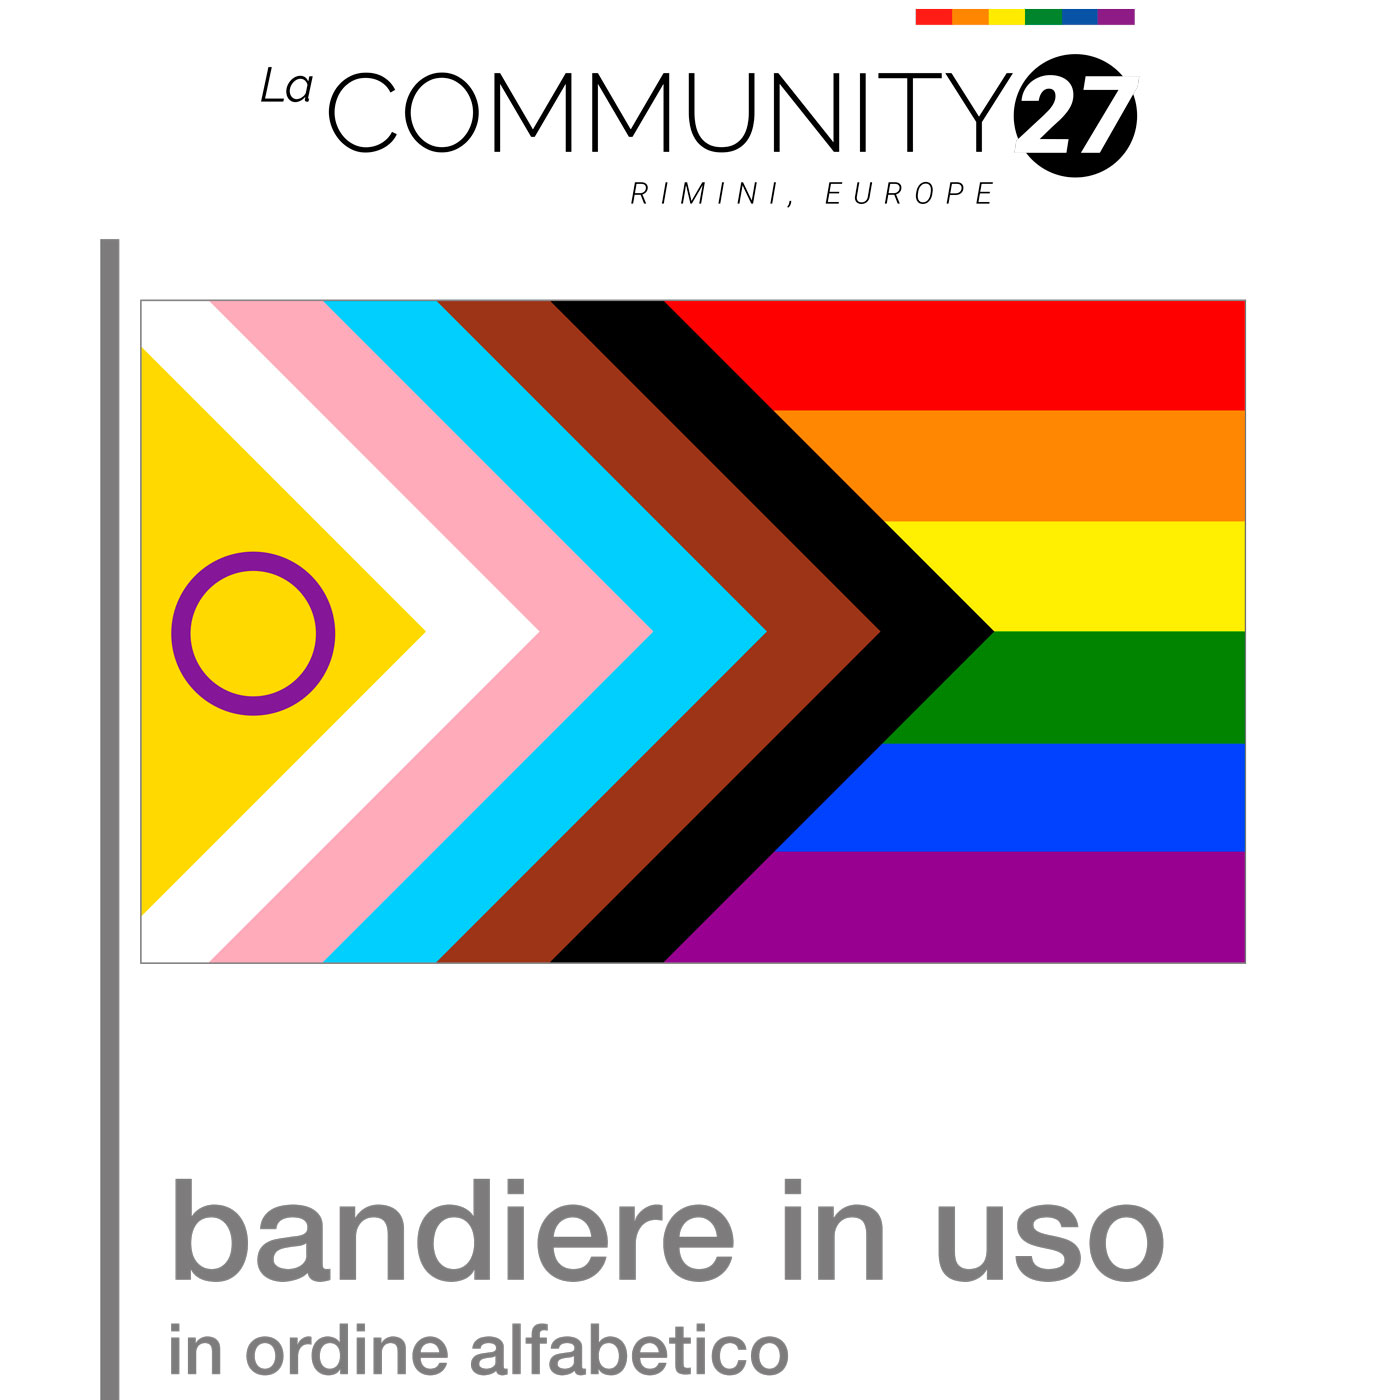 Bandiere LGBTQIA+ in uso - La Community 27